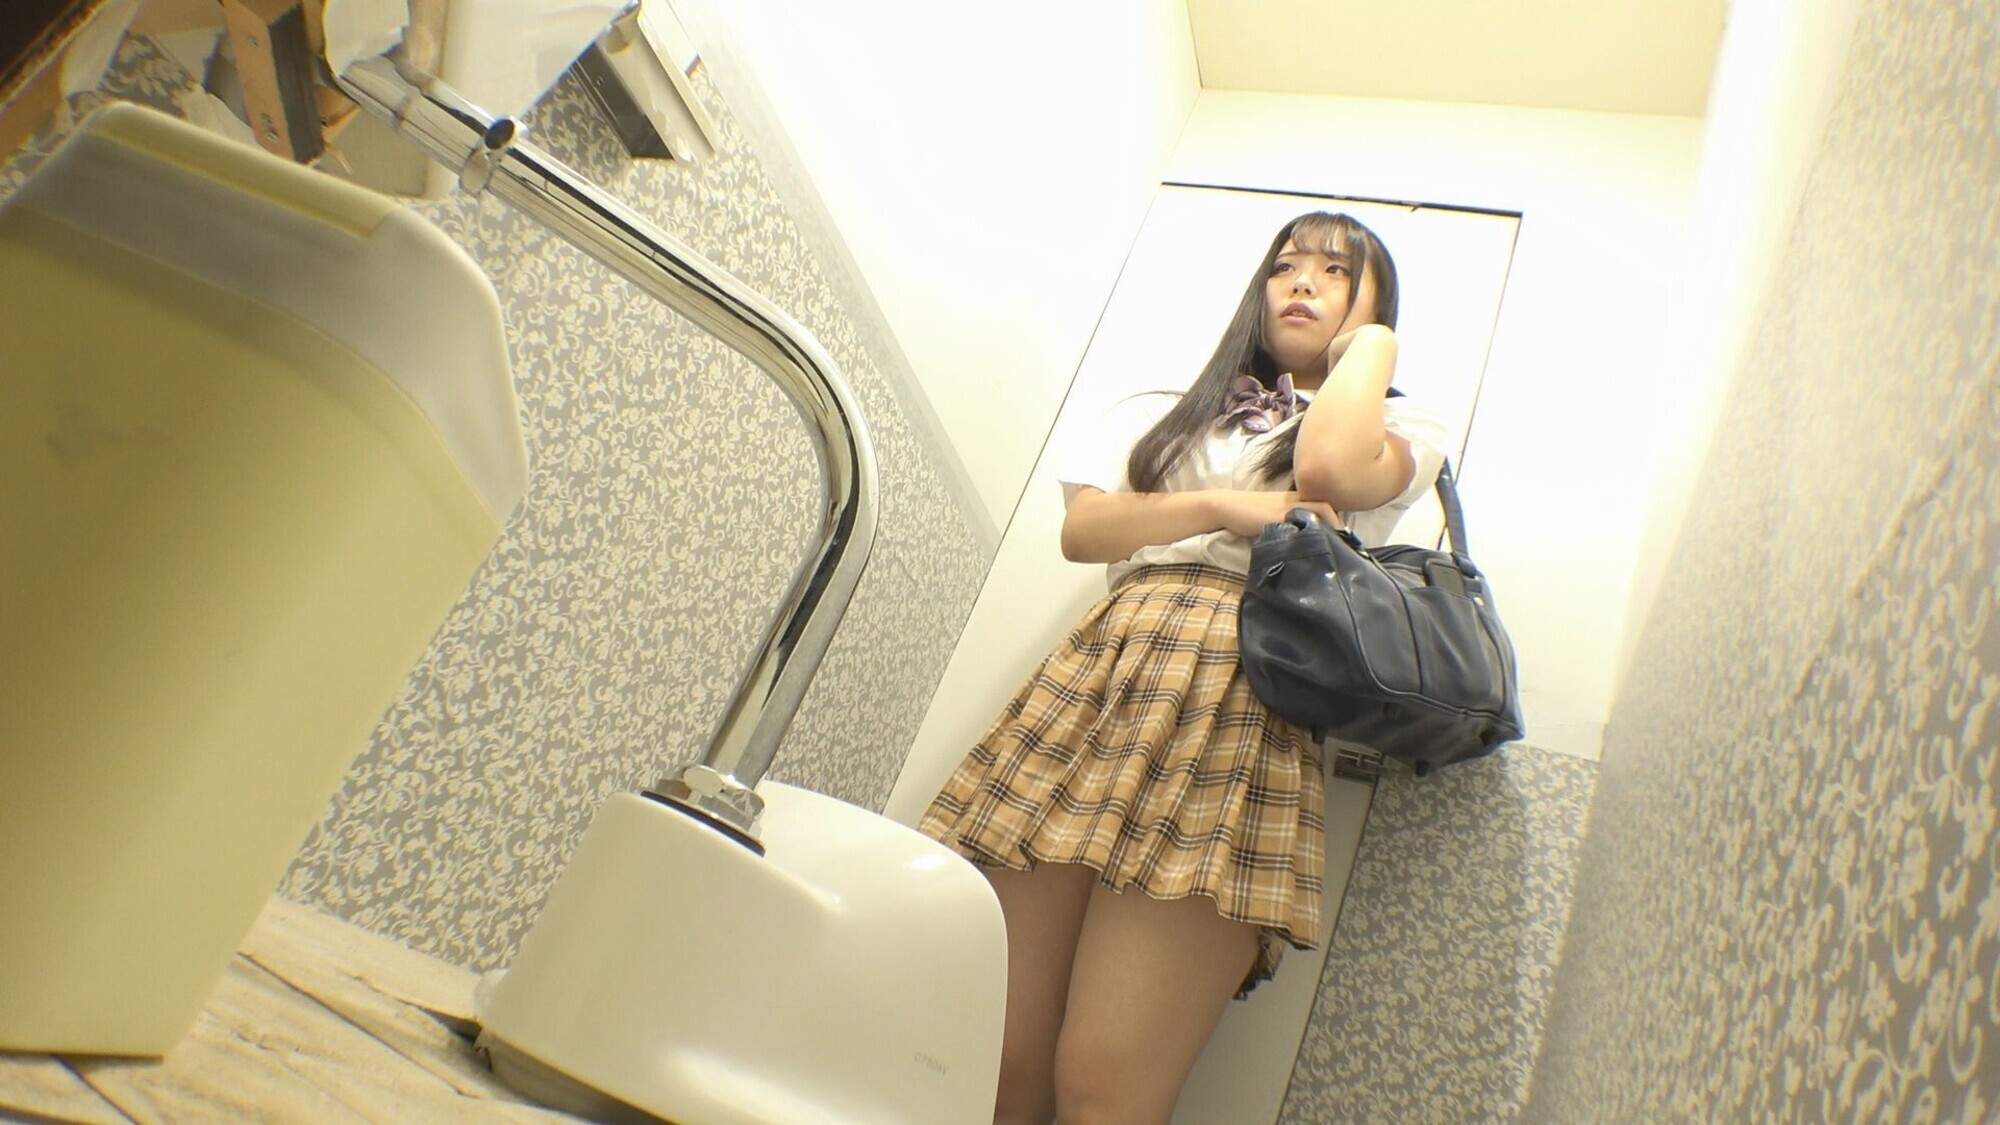 【流出映像】 女子〇生 公衆トイレ下校中オナニー 放尿・動画124分 画像2